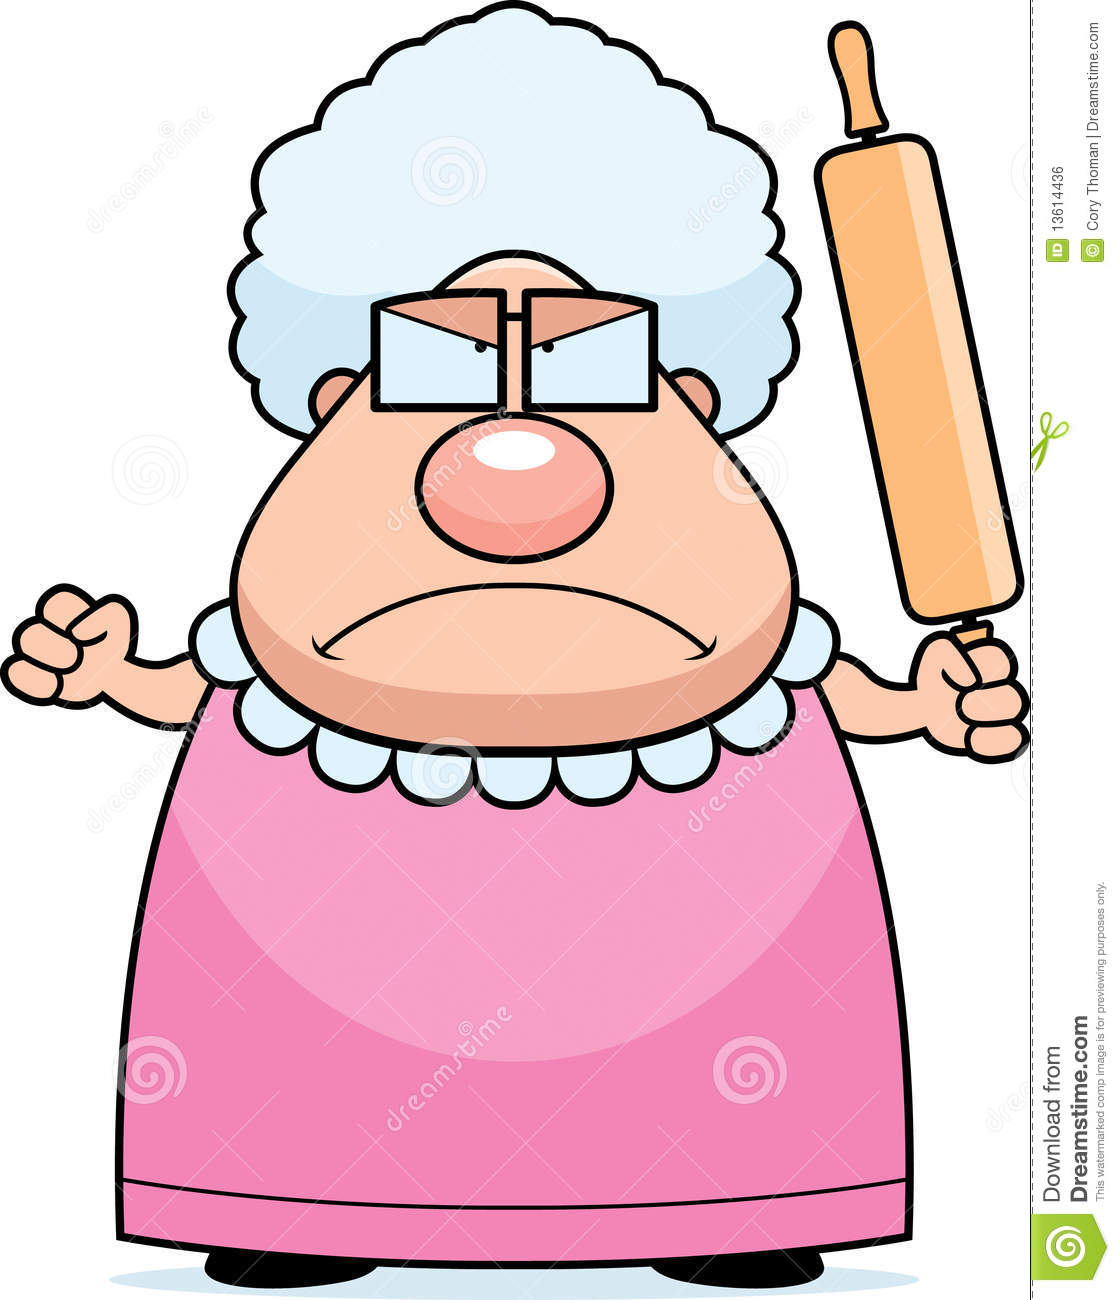 Angry Grandma Royalty Free Stock Image   Image  13614436